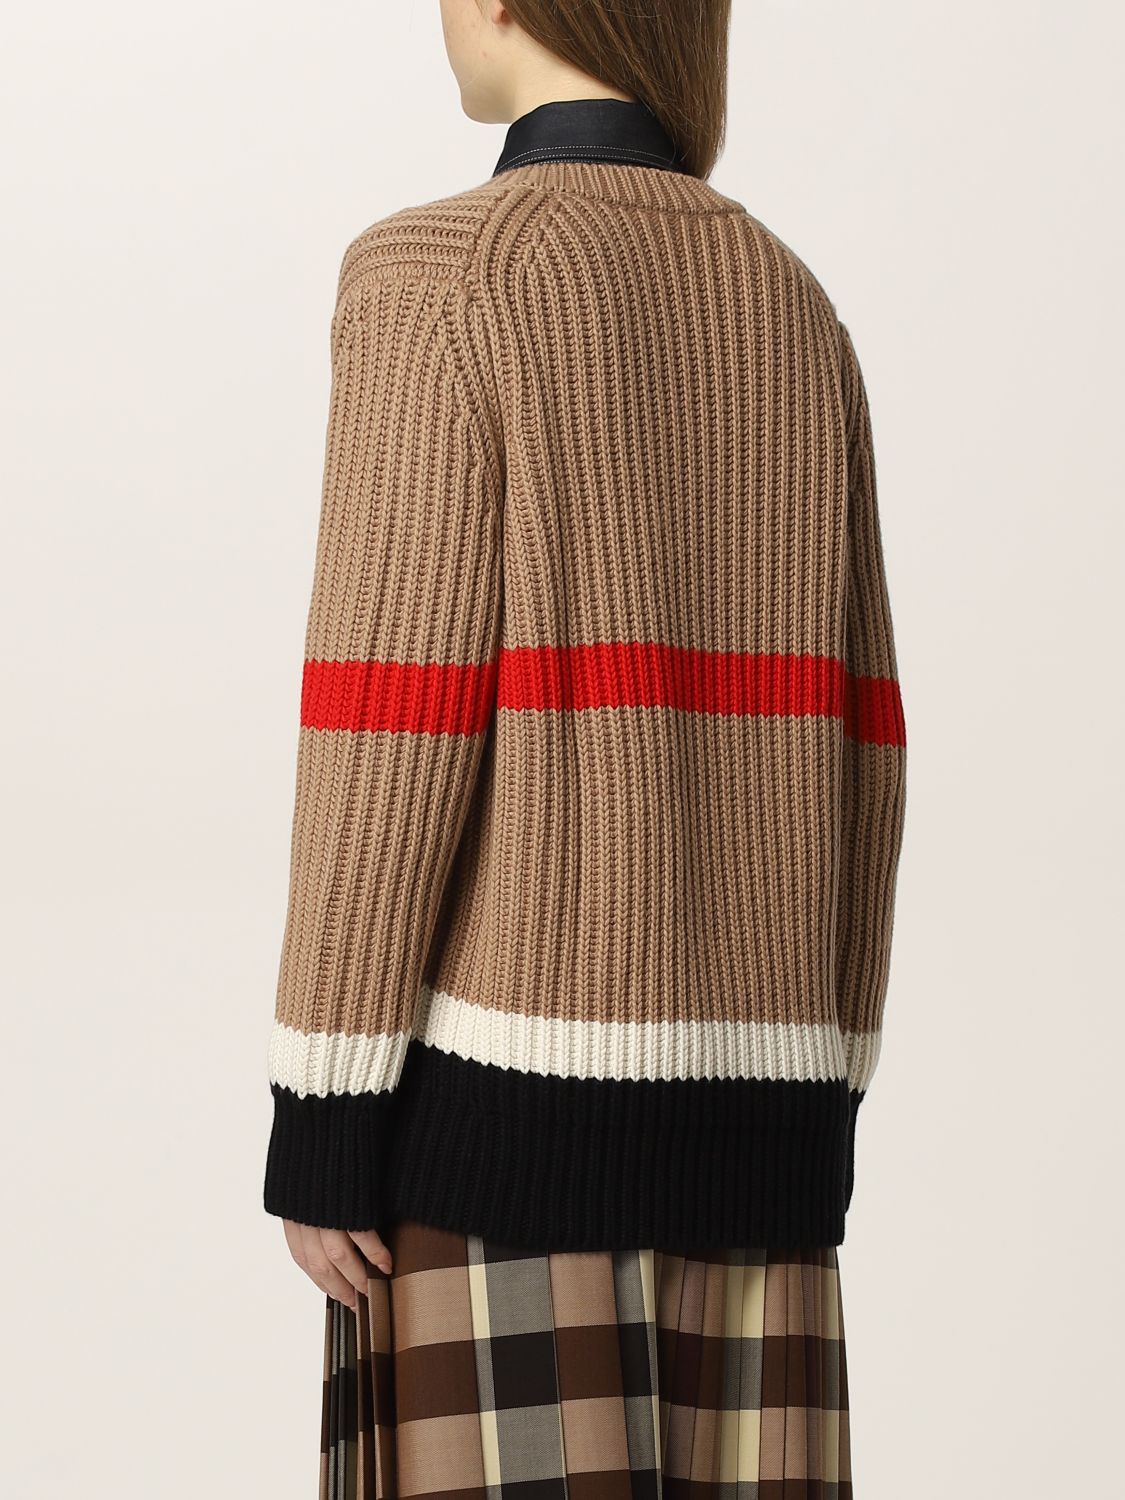 Burberry Brit Cashmere Cotton Striped Sweater. LV Inventeur Damier